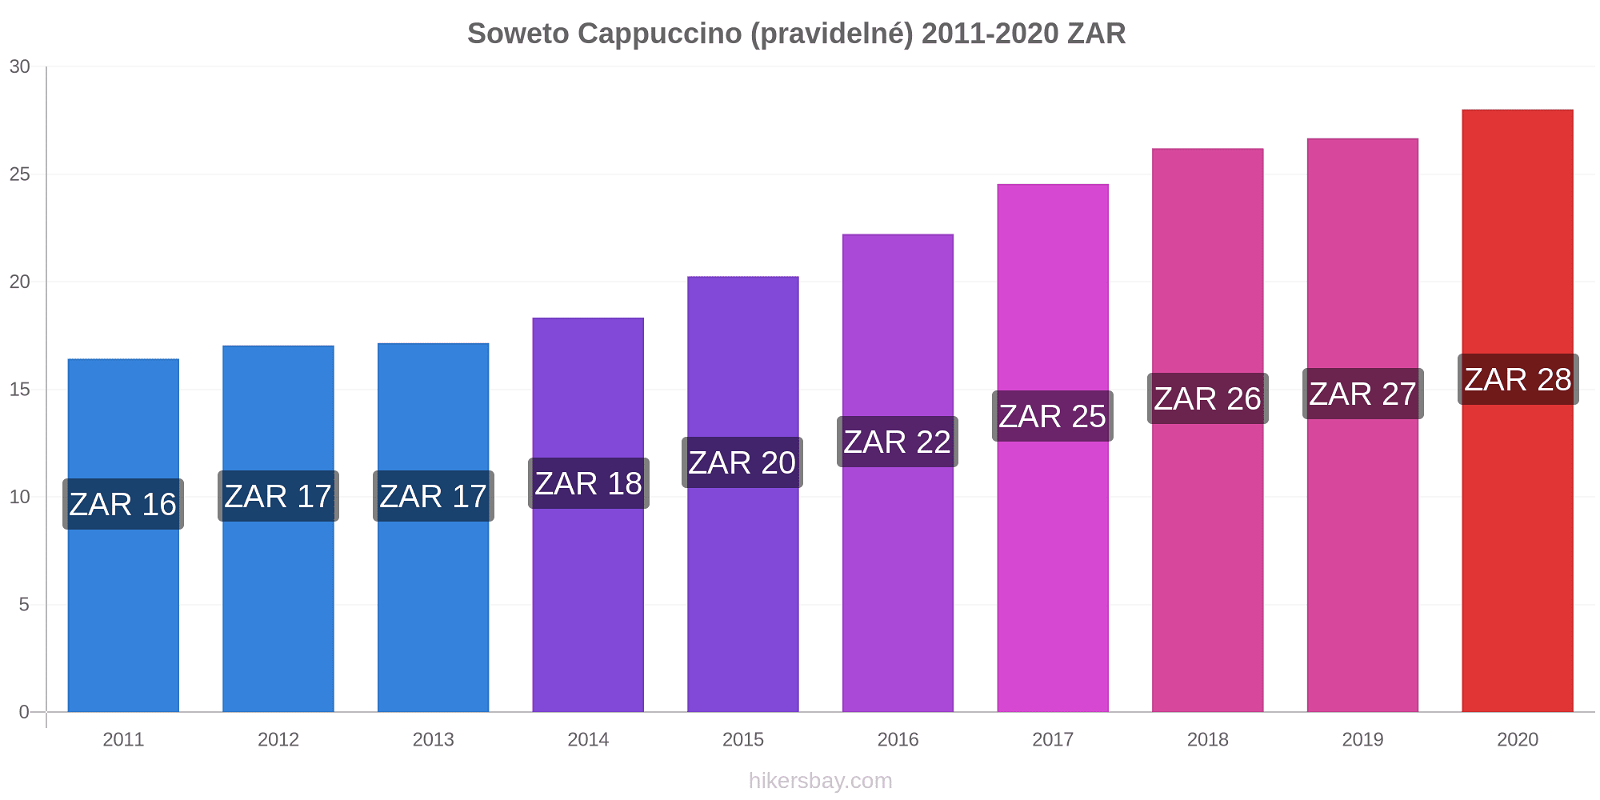 Soweto změny cen Cappuccino (pravidelné) hikersbay.com